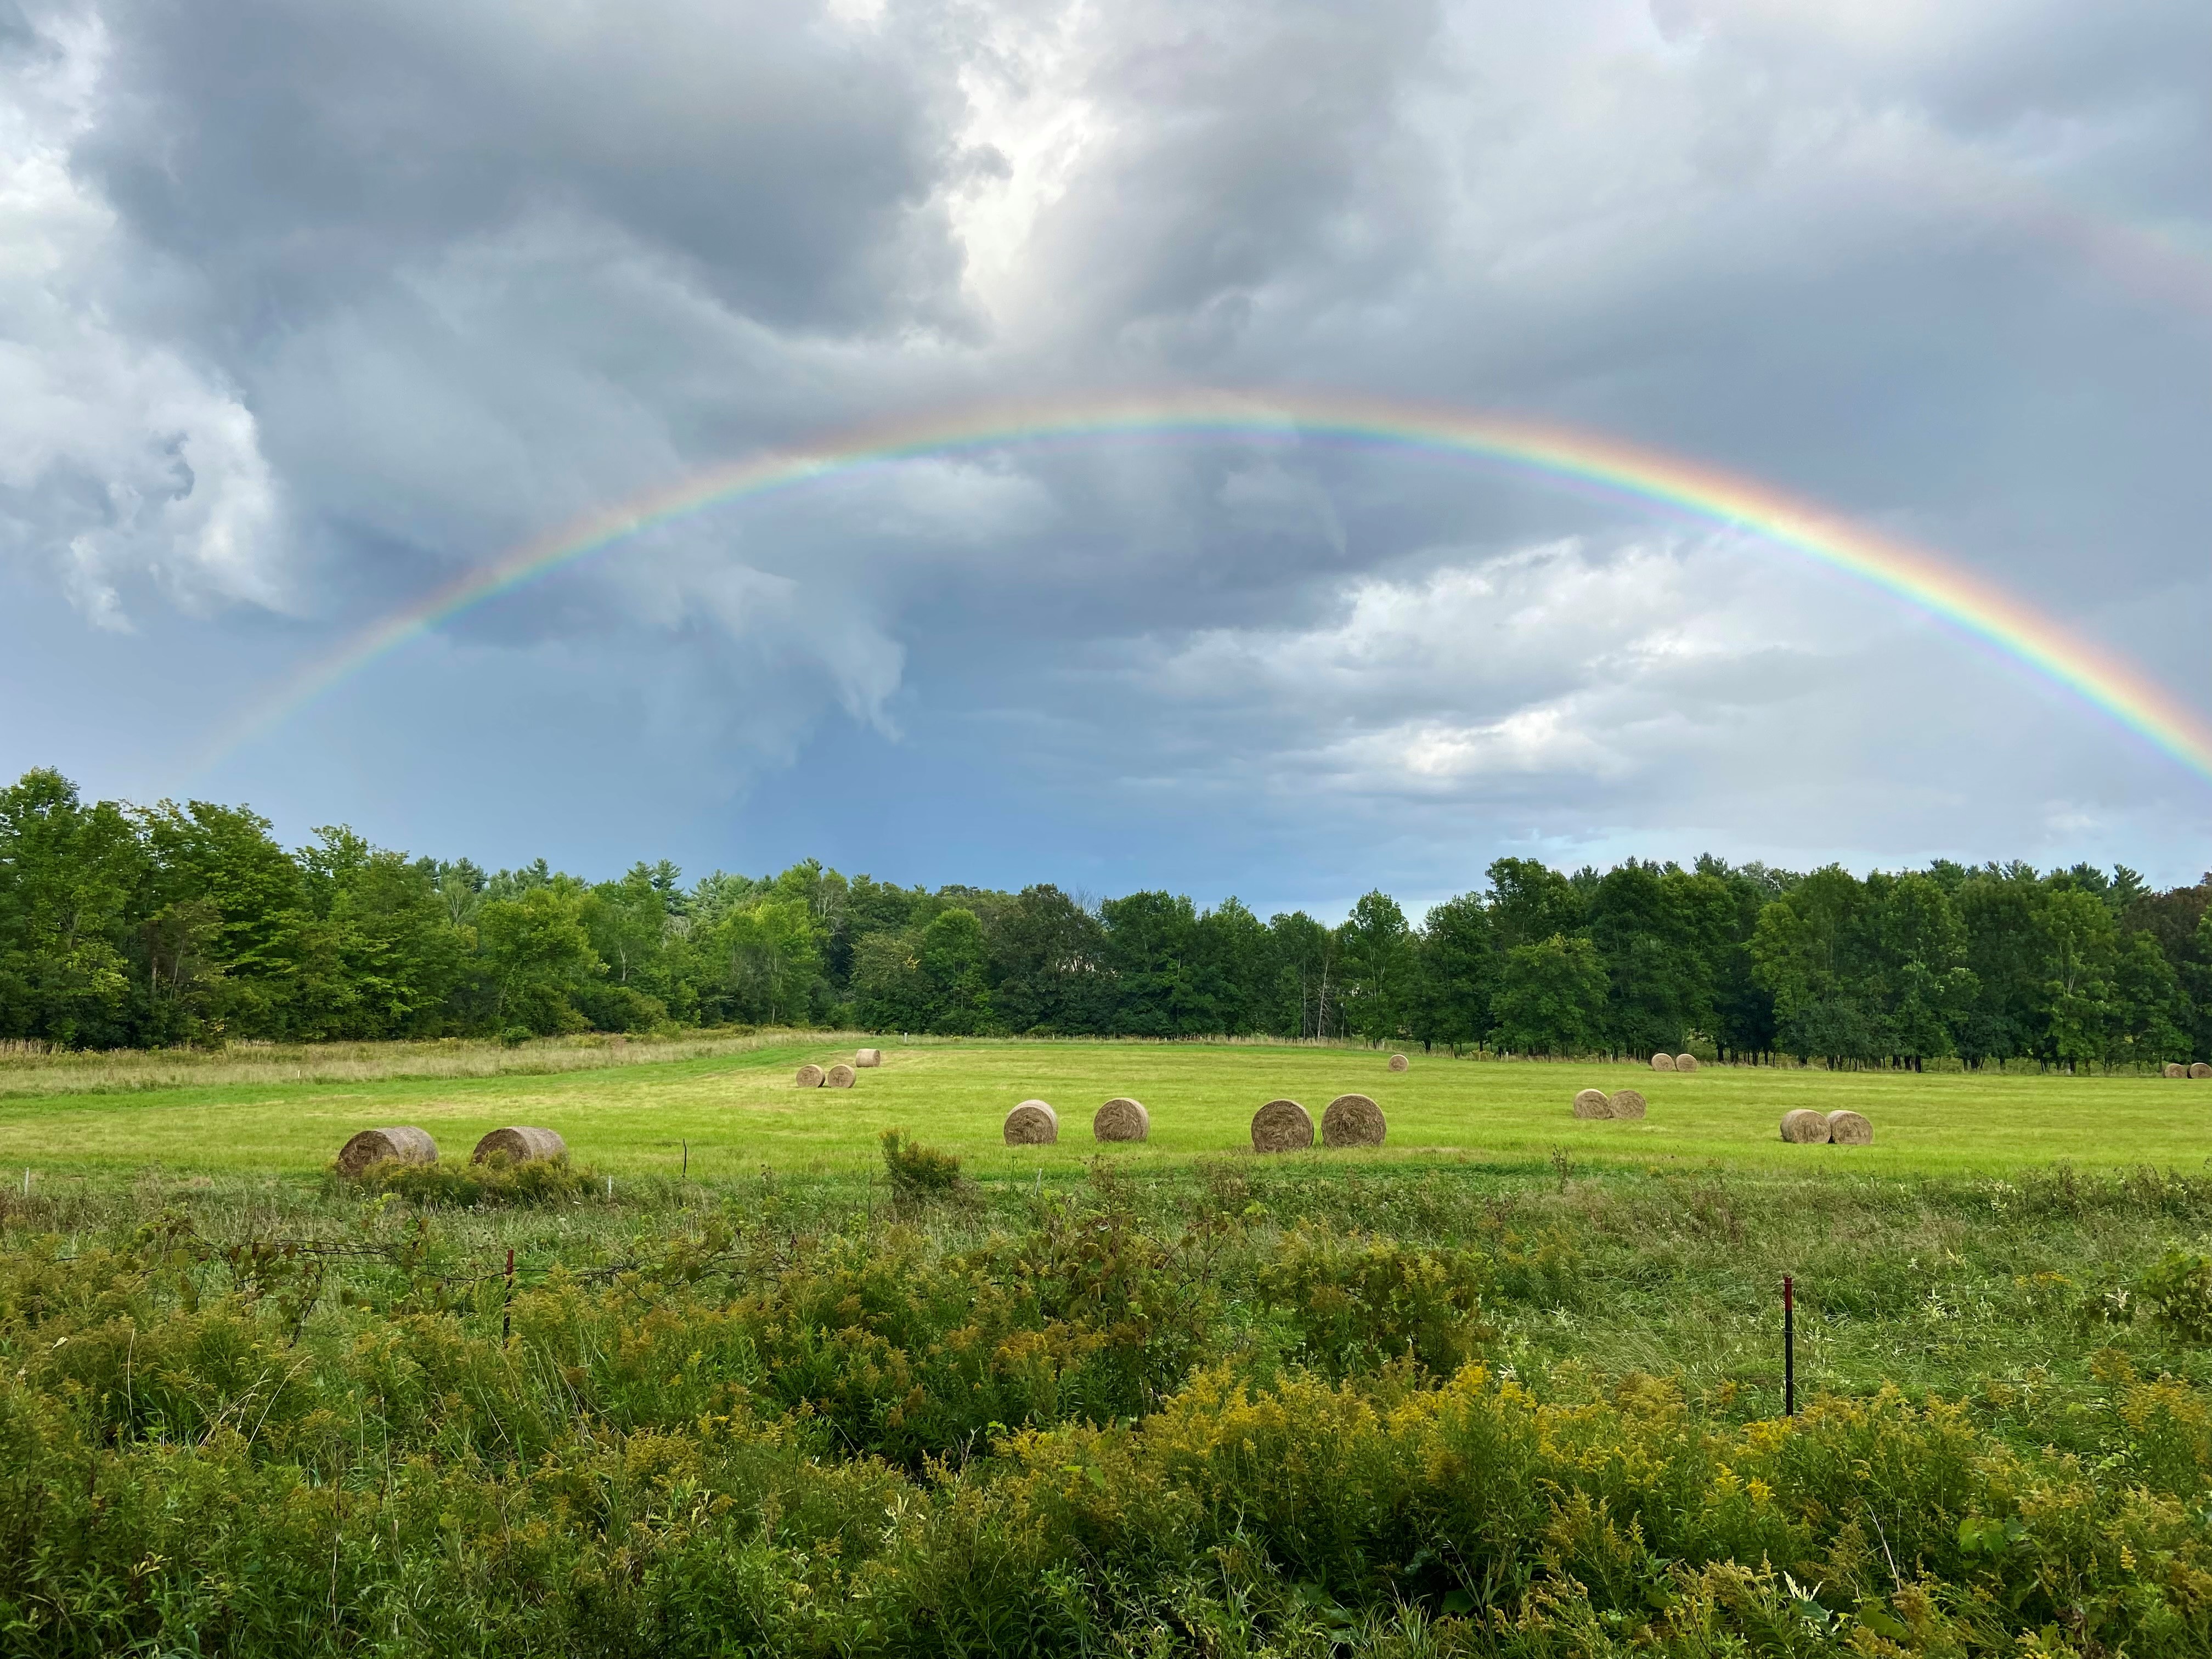 a beautiful rainbow over a farm field